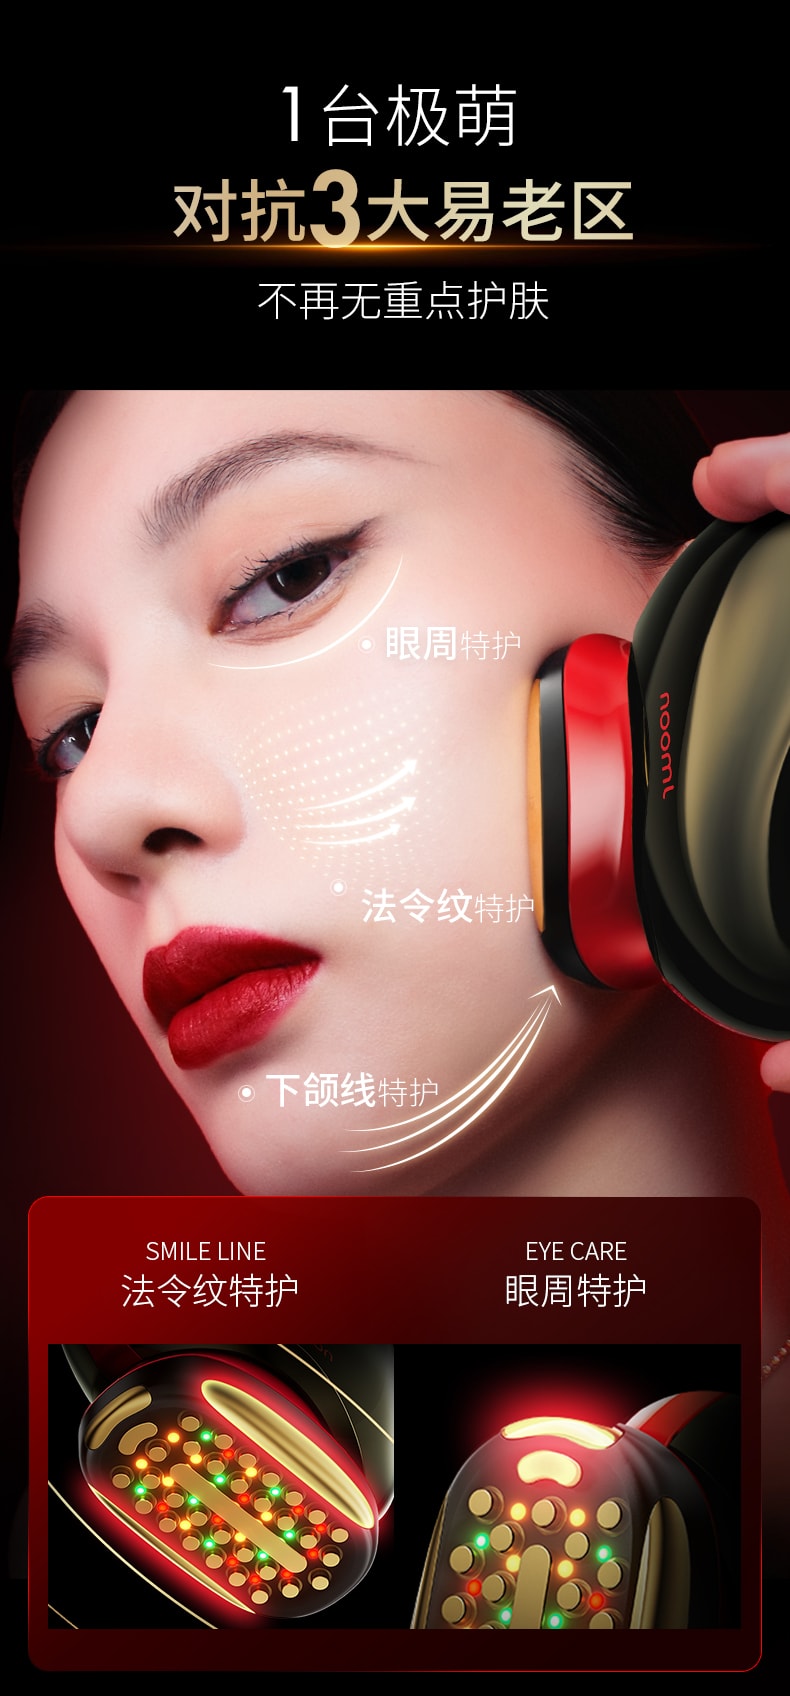 Jmoon極萌膠原砲臉部射頻美容儀臉部提拉緊緻儀器M30 1件